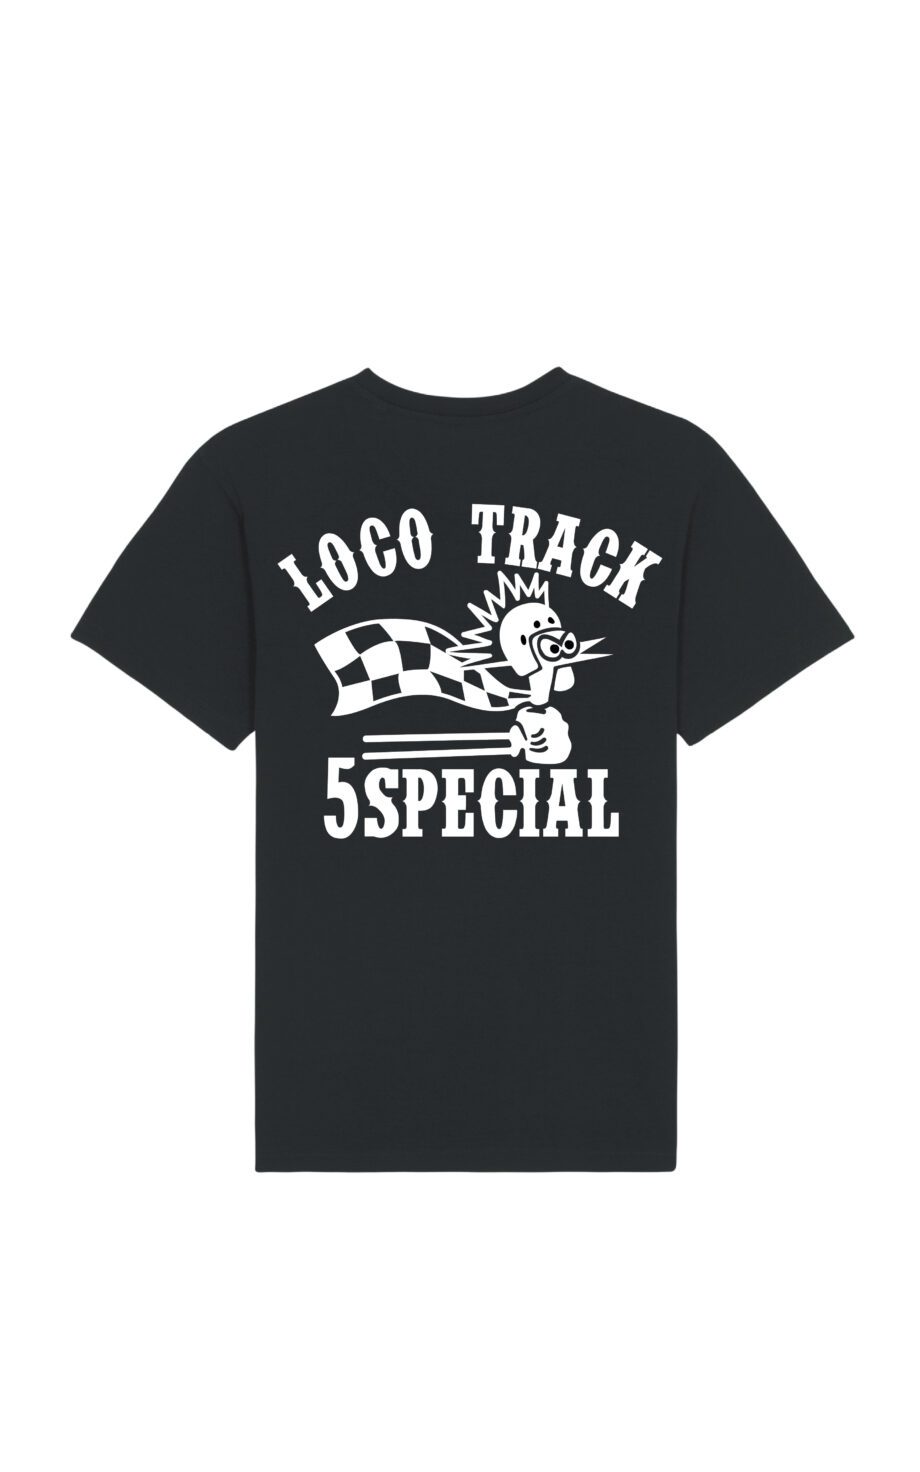 Loco-track-camiseta-5Special-05